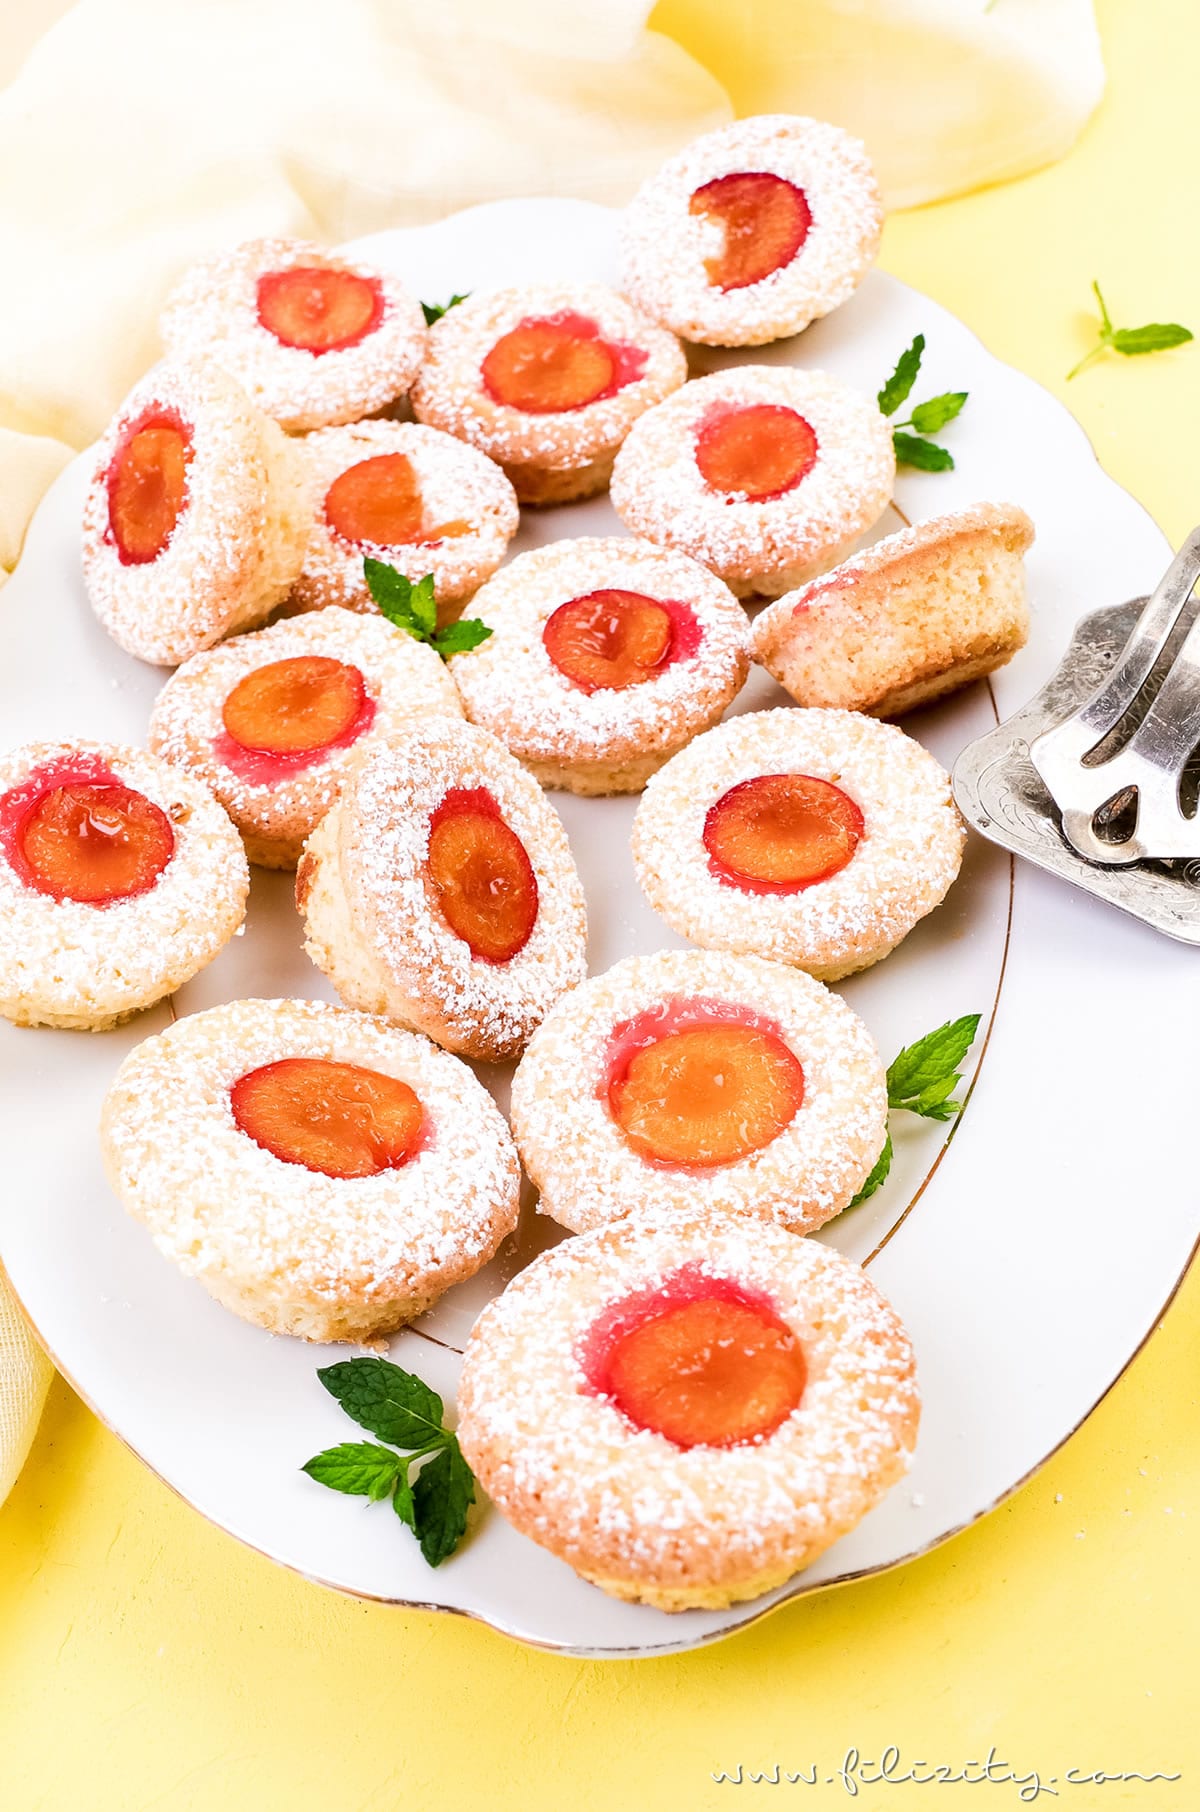 Einfaches Rezept für Kirschpflaumen-Muffins mit Kokos | Auch mit Mirabellen oder als Blechkuchen backen | Filizity.com | Food-Blog aus dem Rheinland #kirschpflaumen #sommer #mirabellen